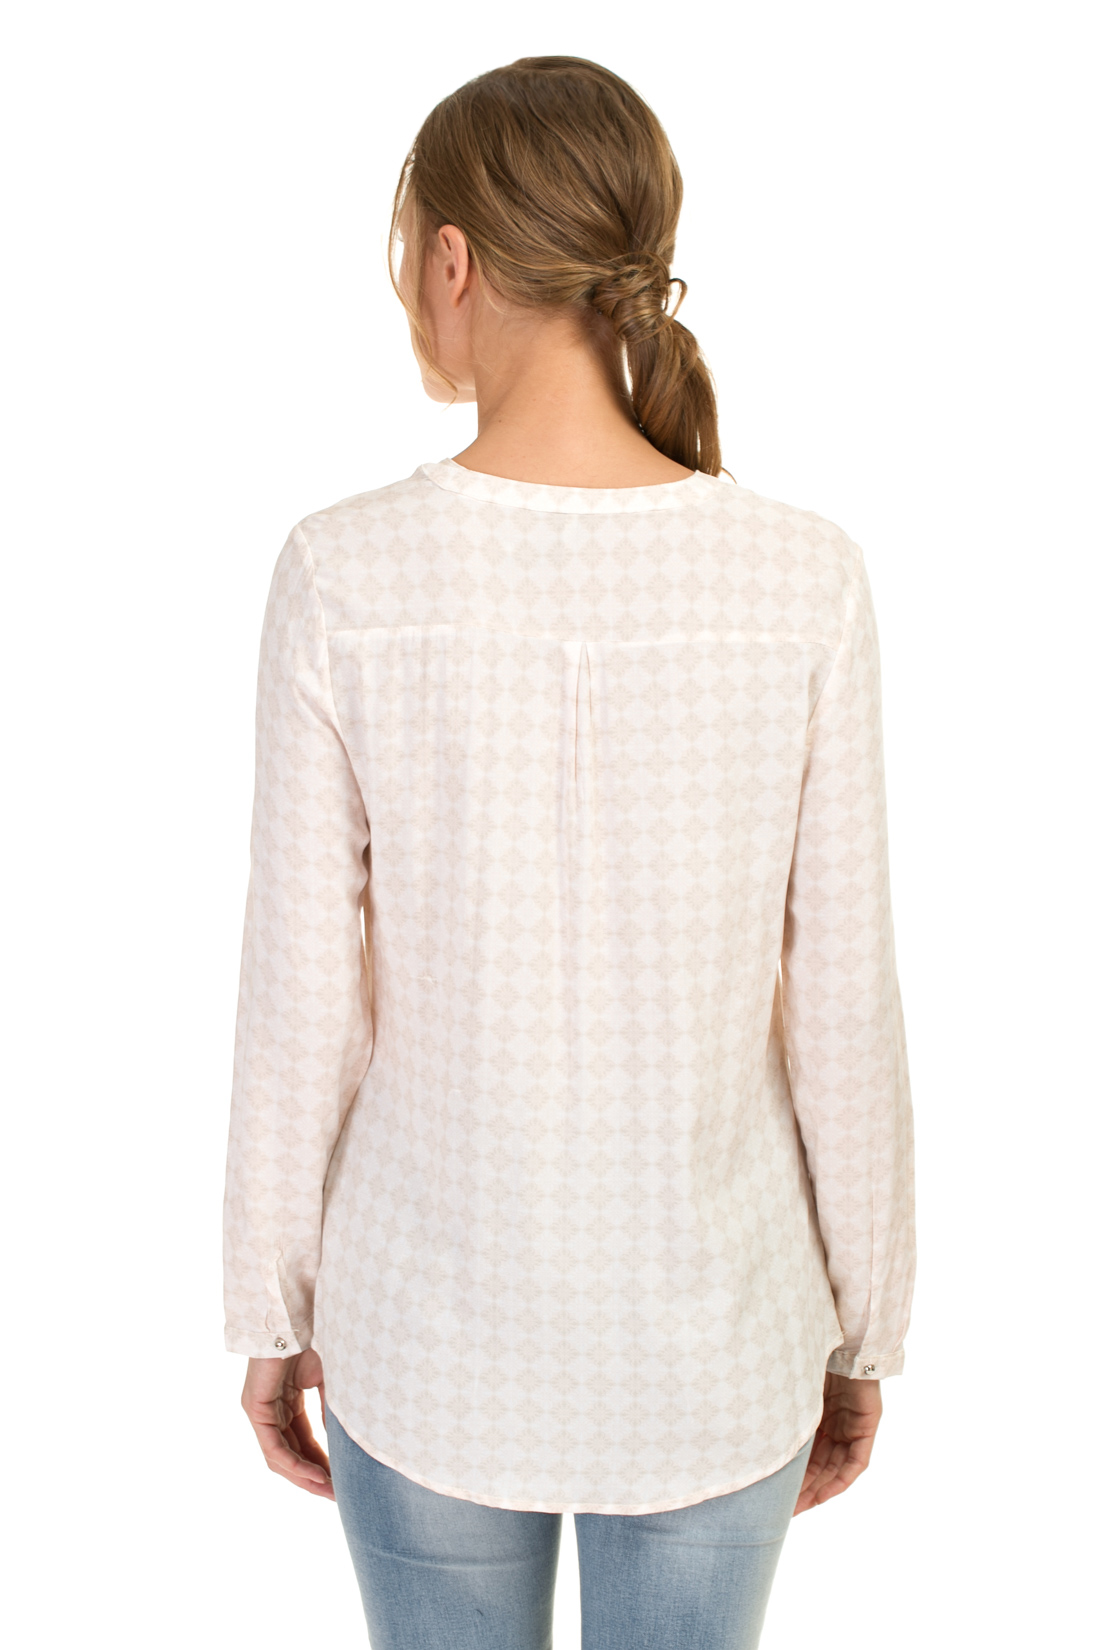 Блузка с пастельным орнаментом (арт. baon B177043), размер XXL, цвет белый Блузка с пастельным орнаментом (арт. baon B177043) - фото 2